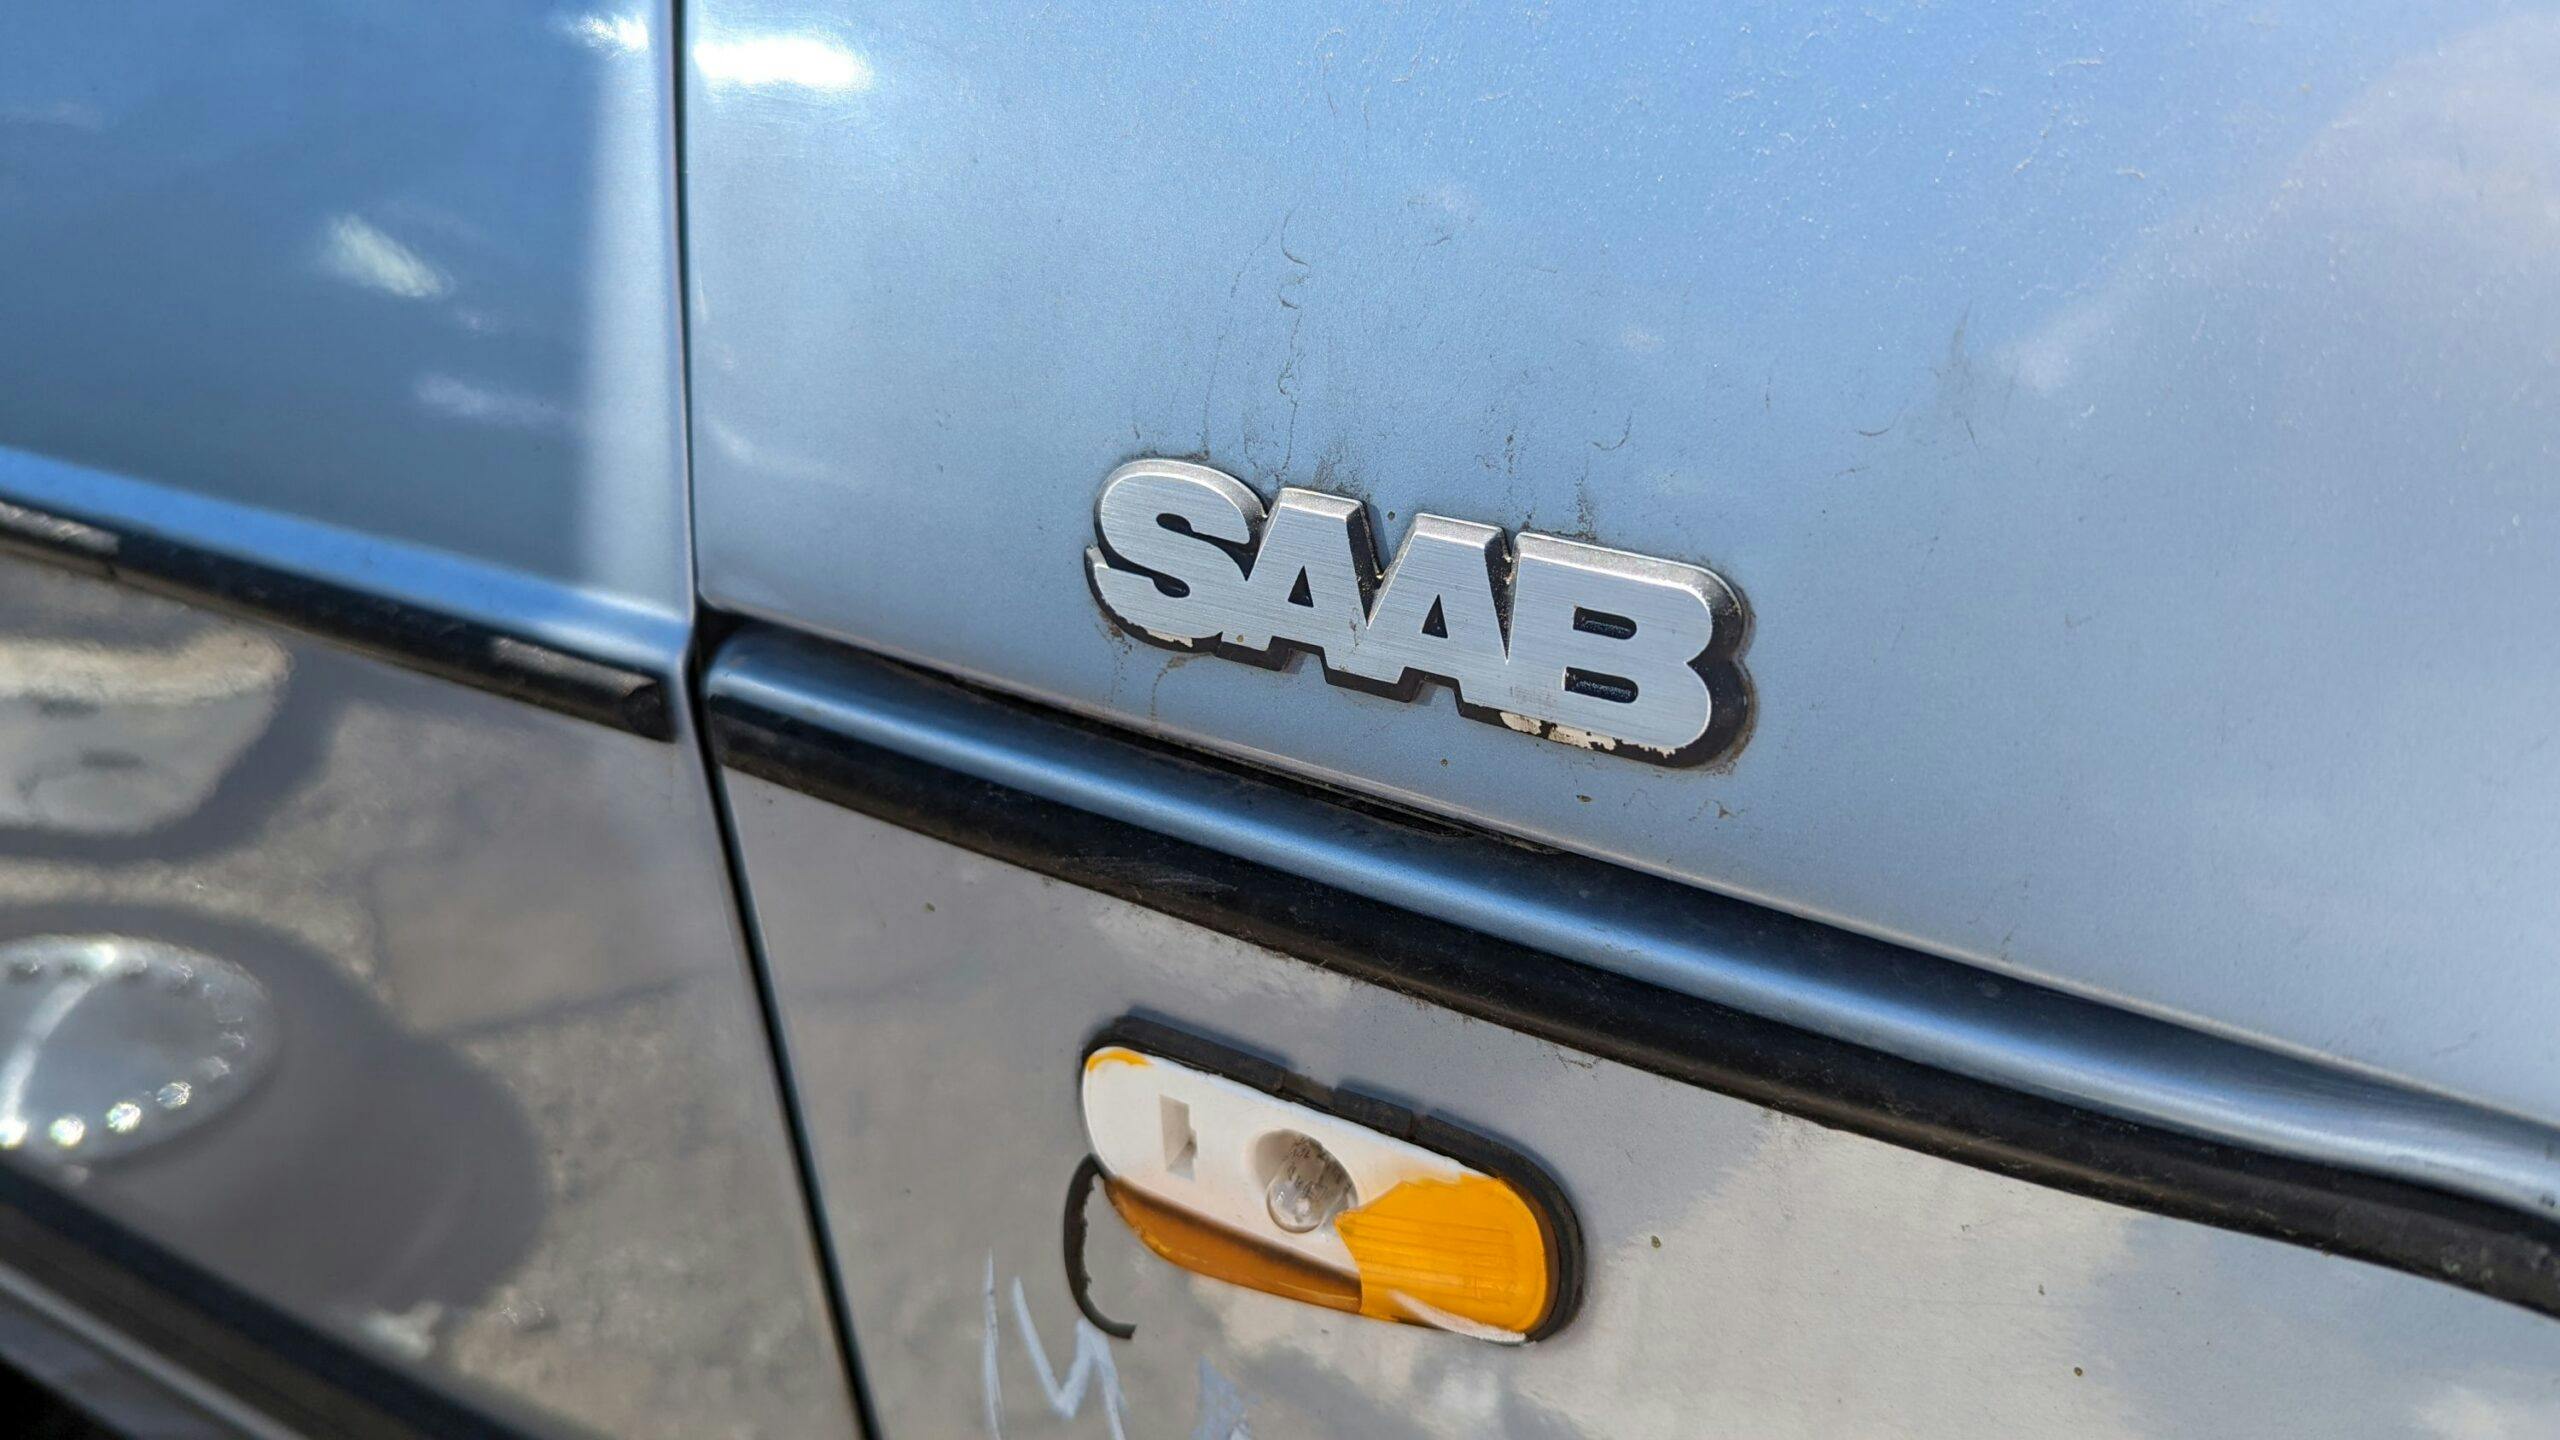 1986 Saab 900 S Sedan badge